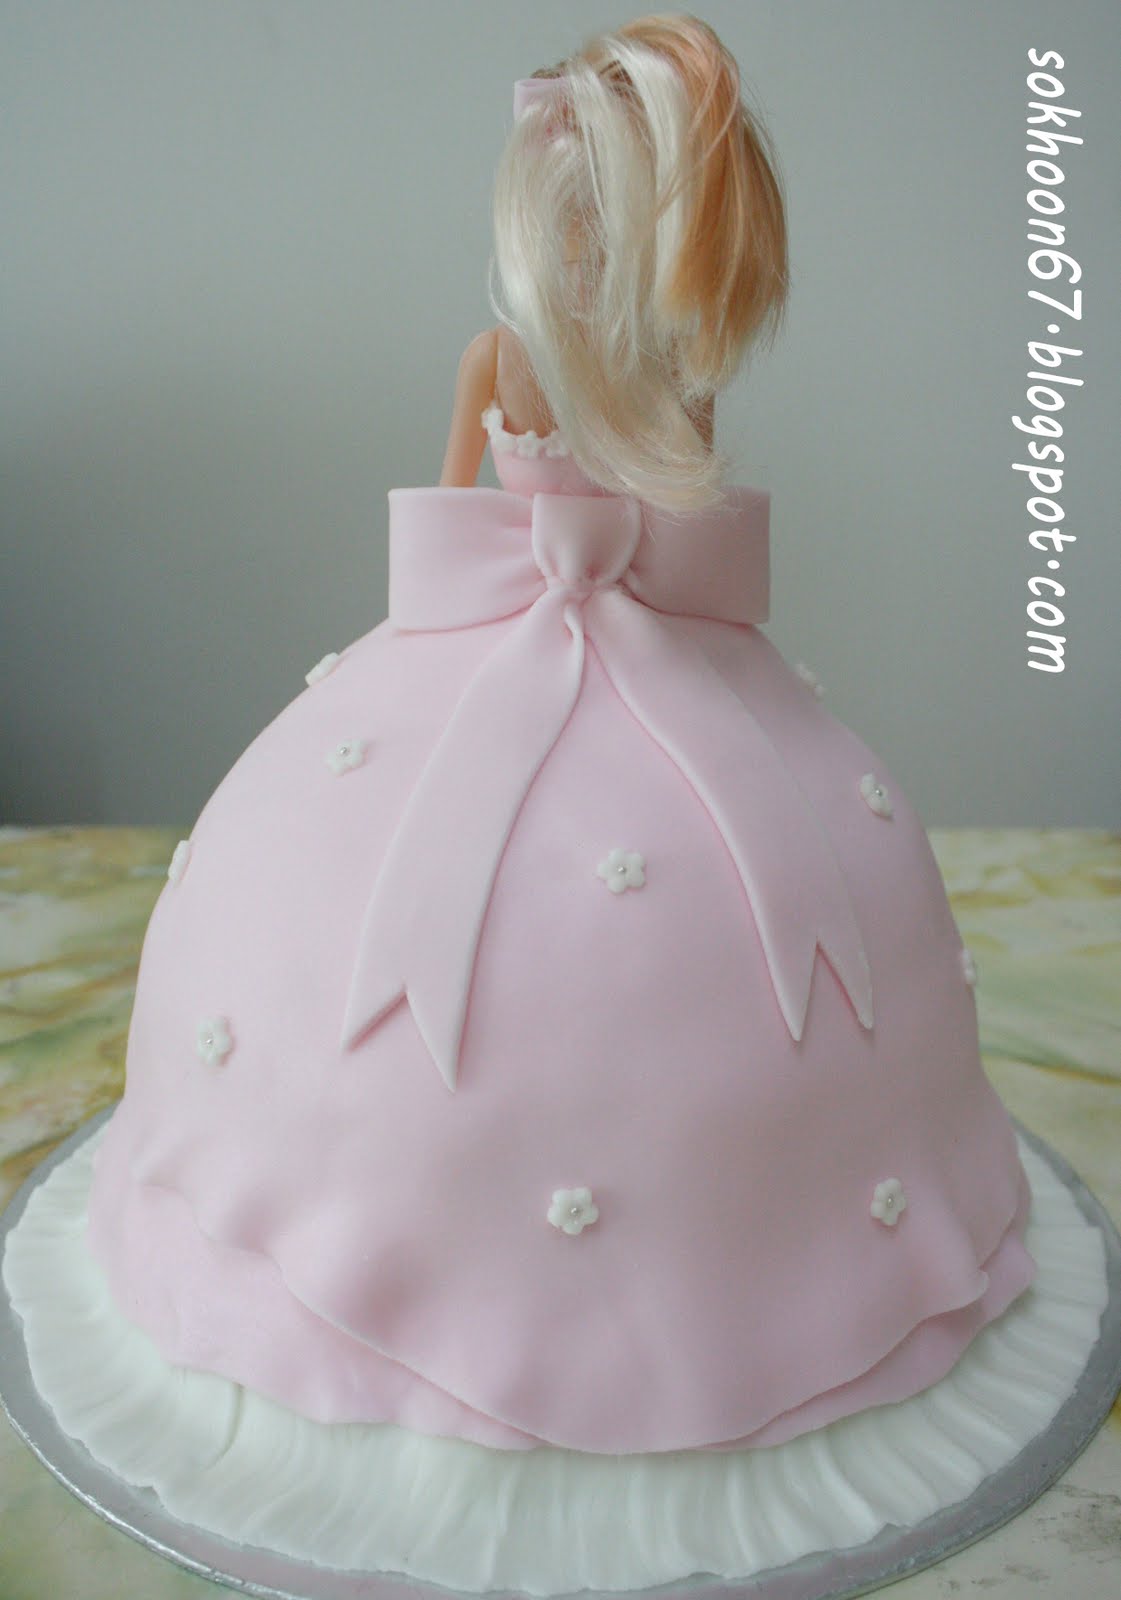 做个快乐的自己: 芭比娃娃生日蛋糕~~~女儿生日